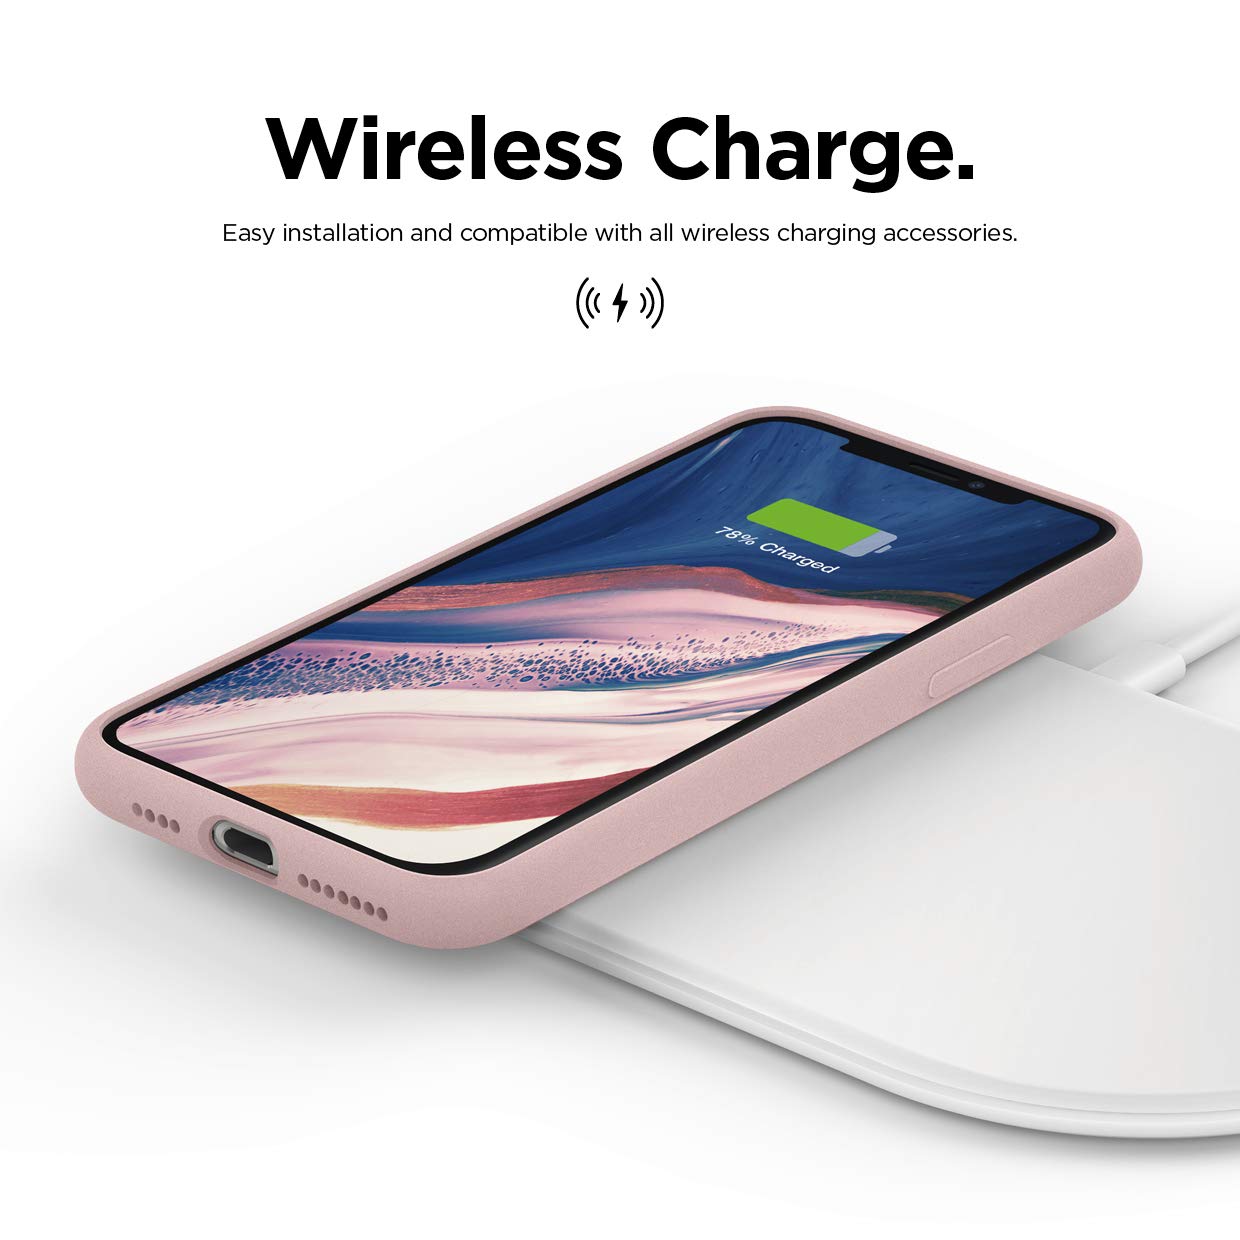 elago Premium Silicone Case for iPhone 11 Pro [11 Colors] White